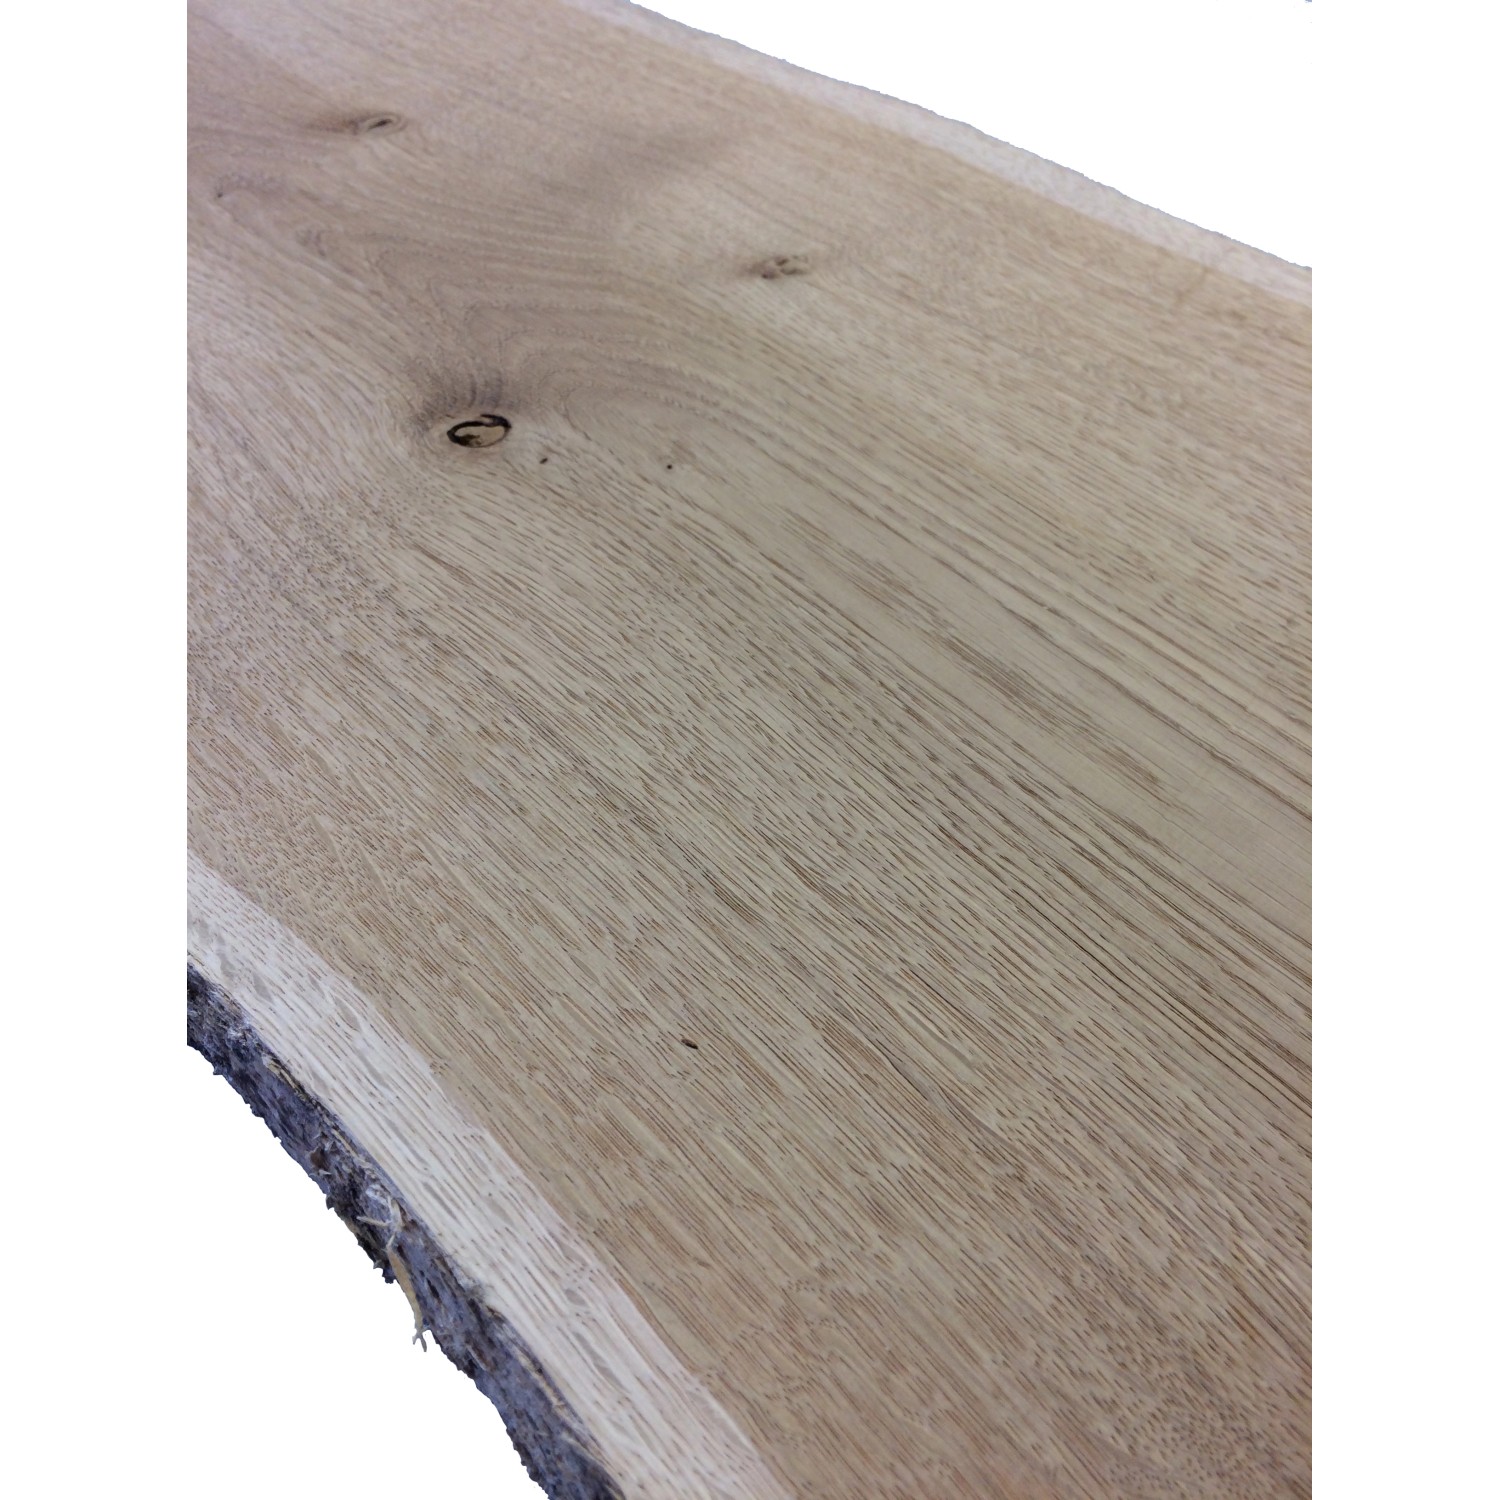 Schnittholz mit Baumkante XL Eiche 120 cm x 15 cm x 2,2 cm